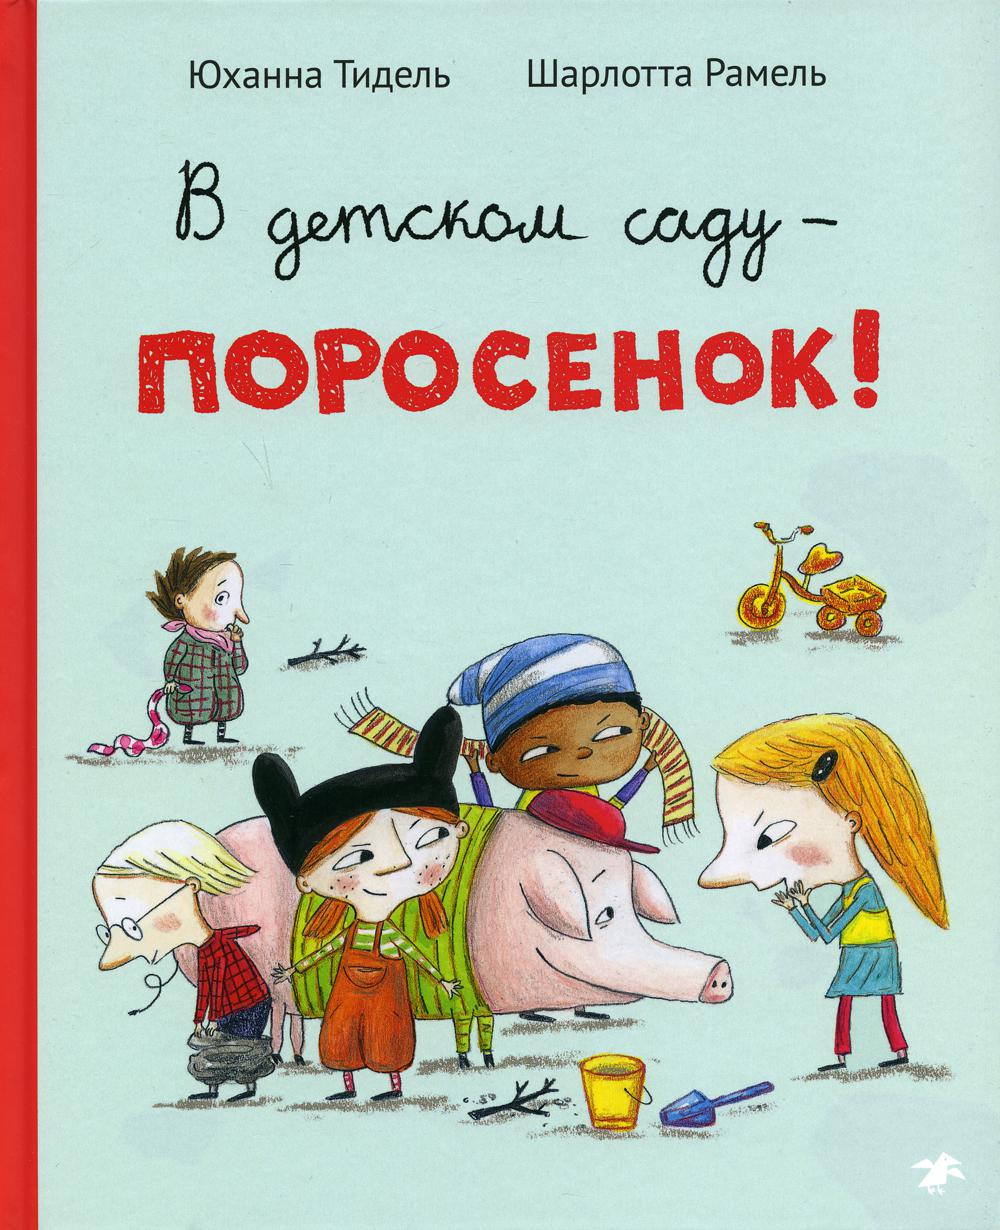 фото Книга в детском саду – поросенок! белая ворона